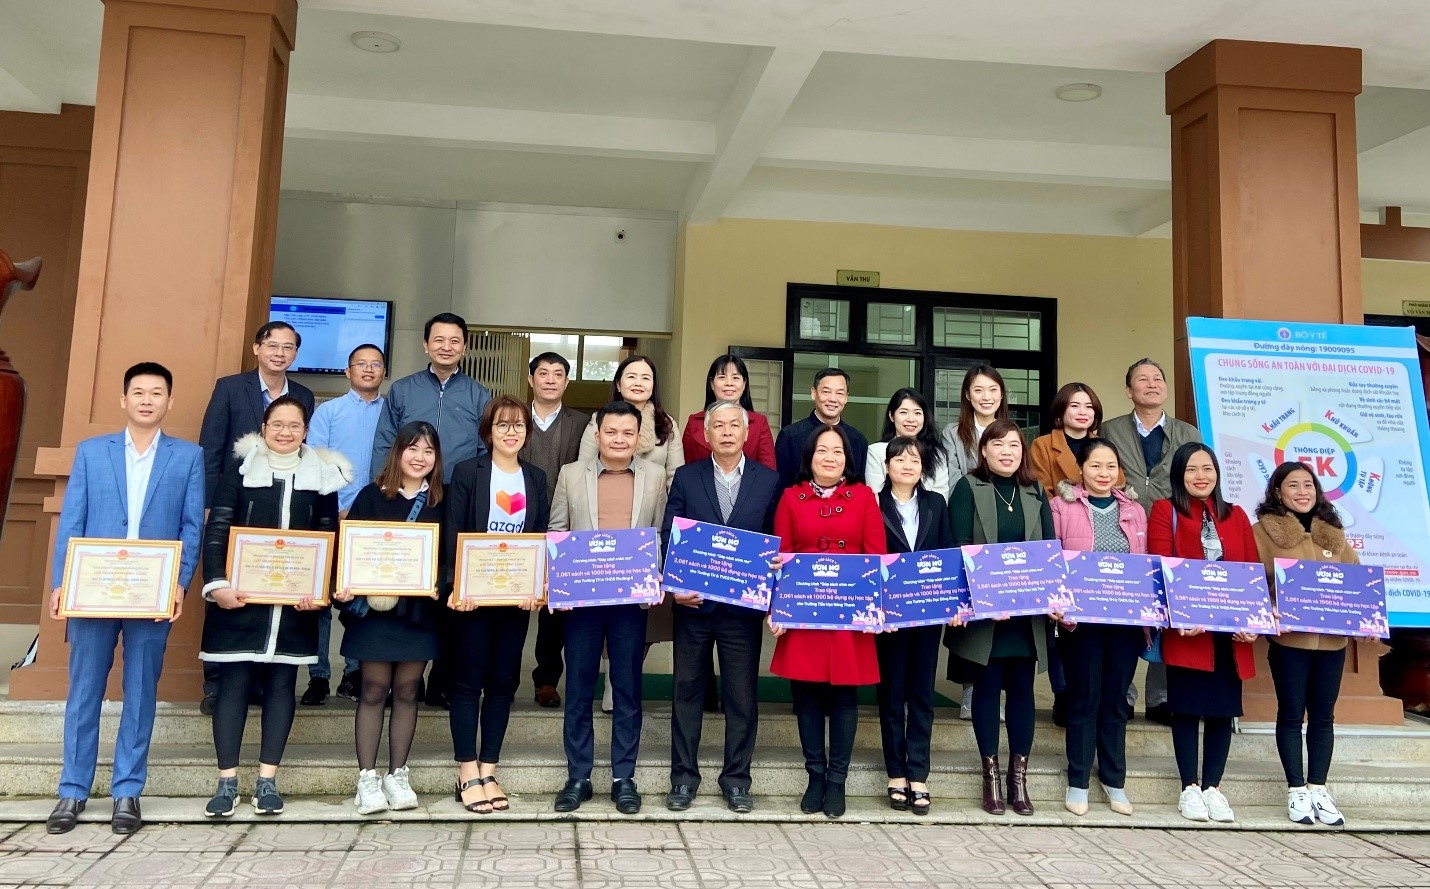 Ban tổ chức chương trình “Góp sách ươm mơ” đã trao tặng sách vở và dụng cụ học tập cho 10 trường tiểu học và trung học cơ sở tại tỉnh Quảng Trị ngày 5/1 vừa qua